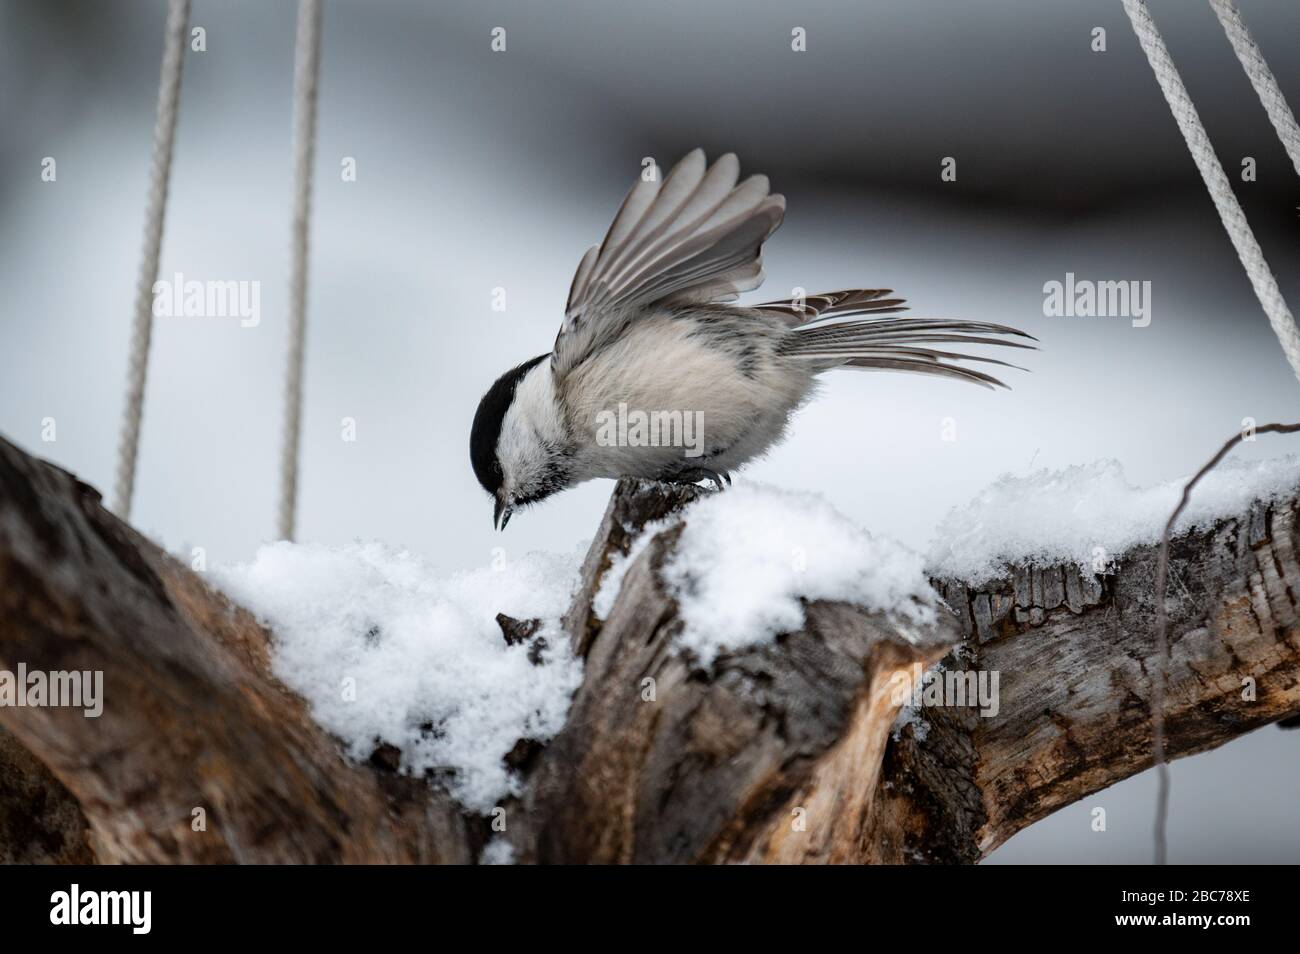 Winter mit niedlichem Singvogel. Vogelgezwitscher in Wald, Schneeflocken und schöner Fleckenzweig. Wildlife-Szene aus der baikal-seenzone in sibirien, Russland Stockfoto